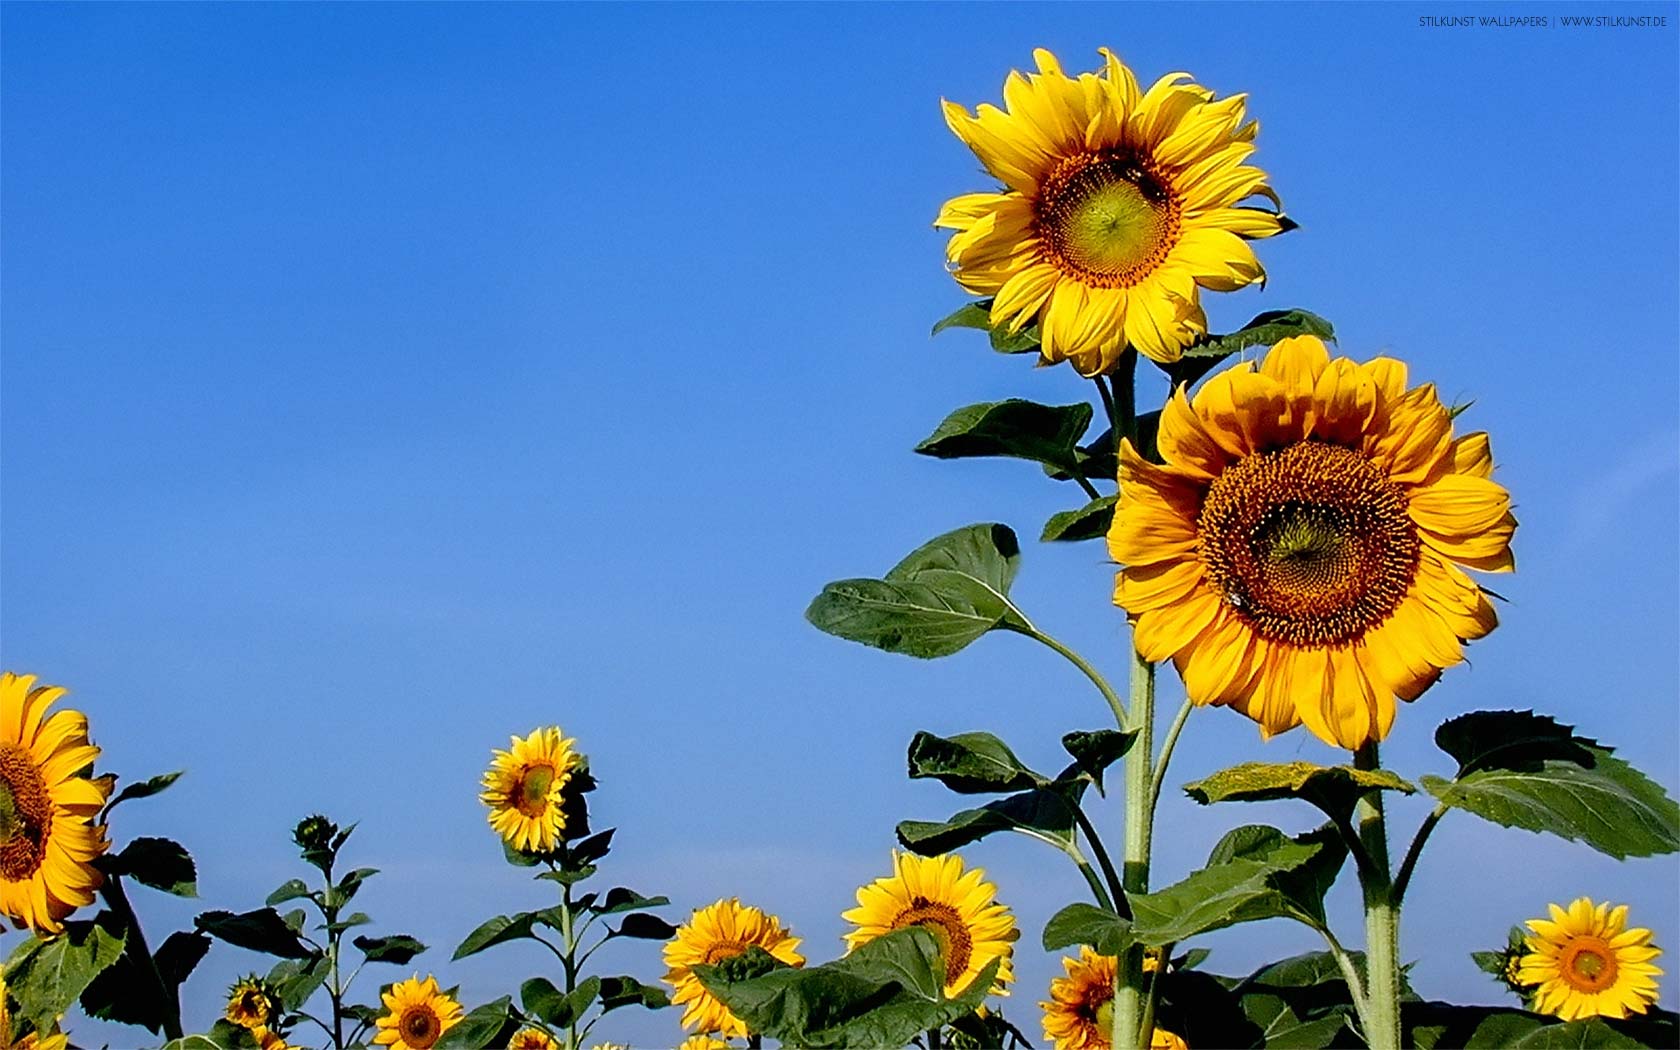 Sonnenblumen auf dem Feld | 1680 x 1050px | Bild: ©by Sabrina | Reiner | www.stilkunst.de | Lizenz: CC BY-SA